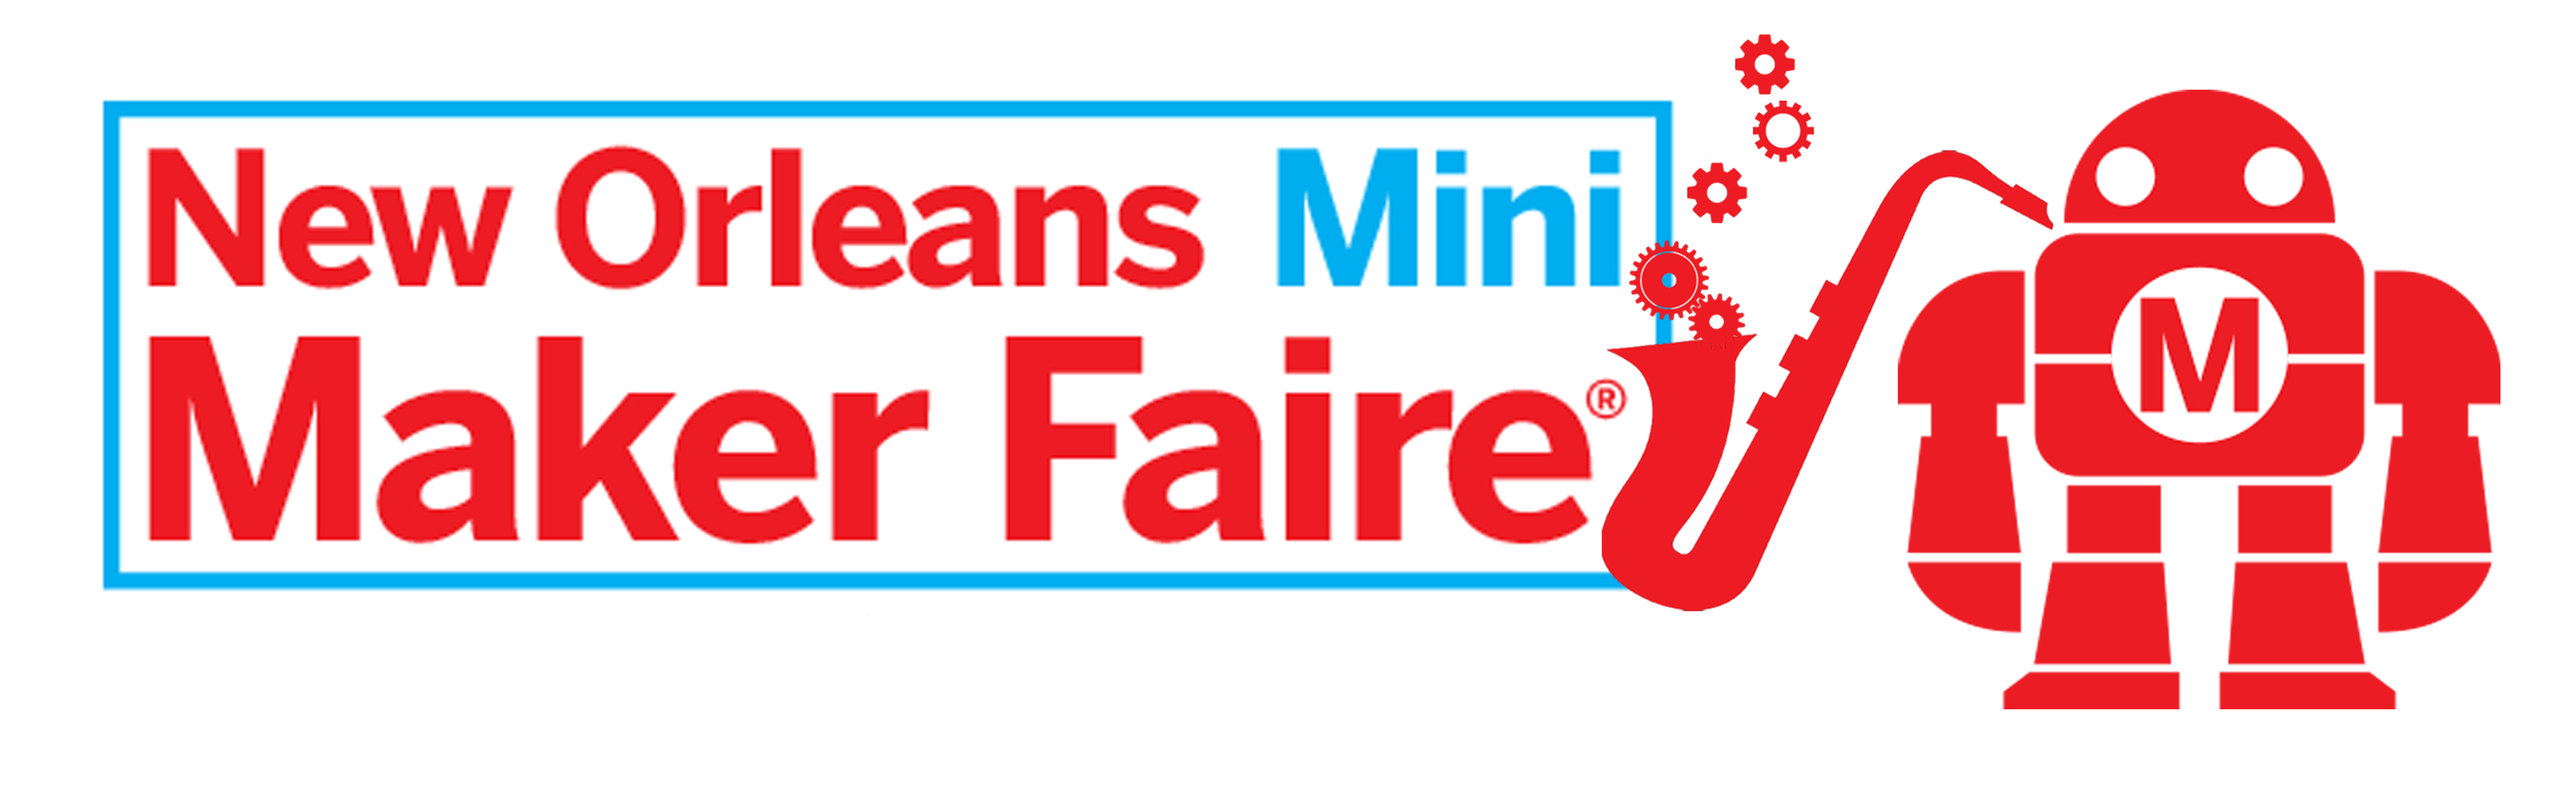 New Orleans Mini Maker Faire Header